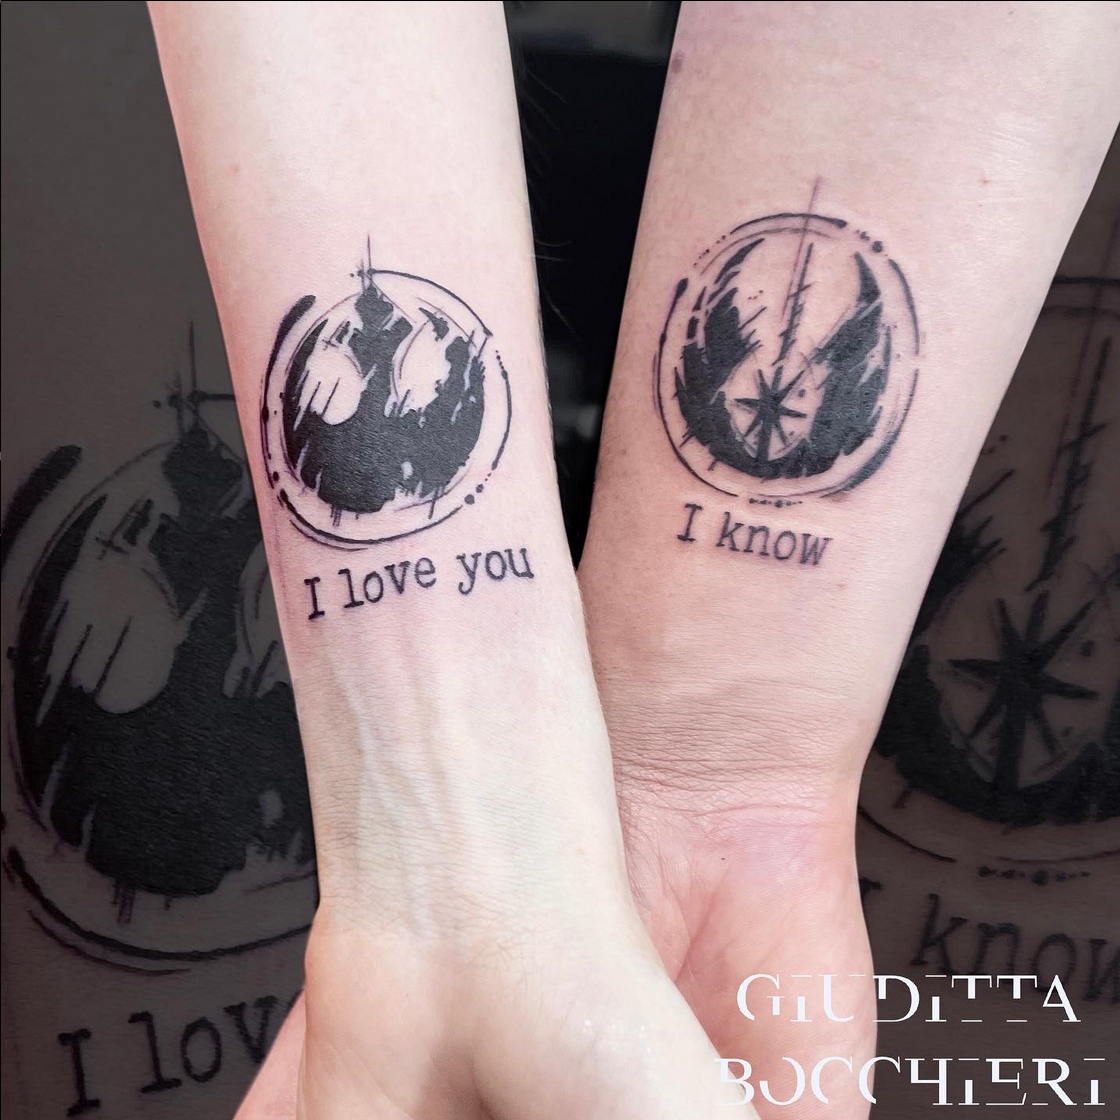 10 Epic Star Wars Tattoo Designs for DieHard Fans